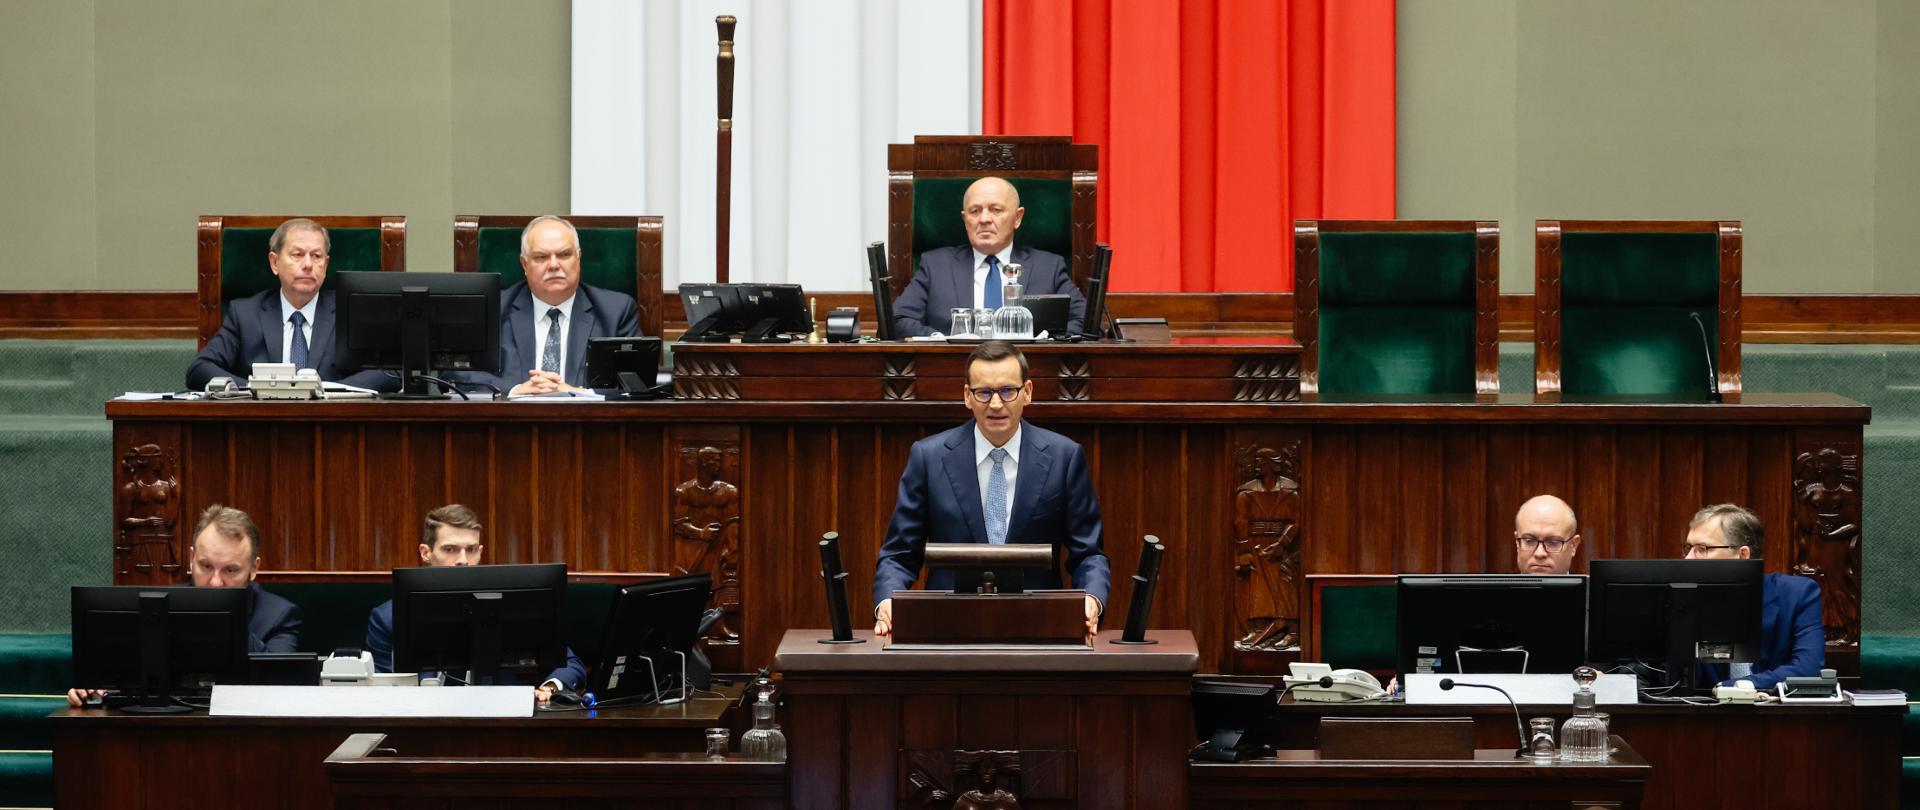 Premier Mateusz Morawiecki podczas wystąpienia w Sejmie RP.